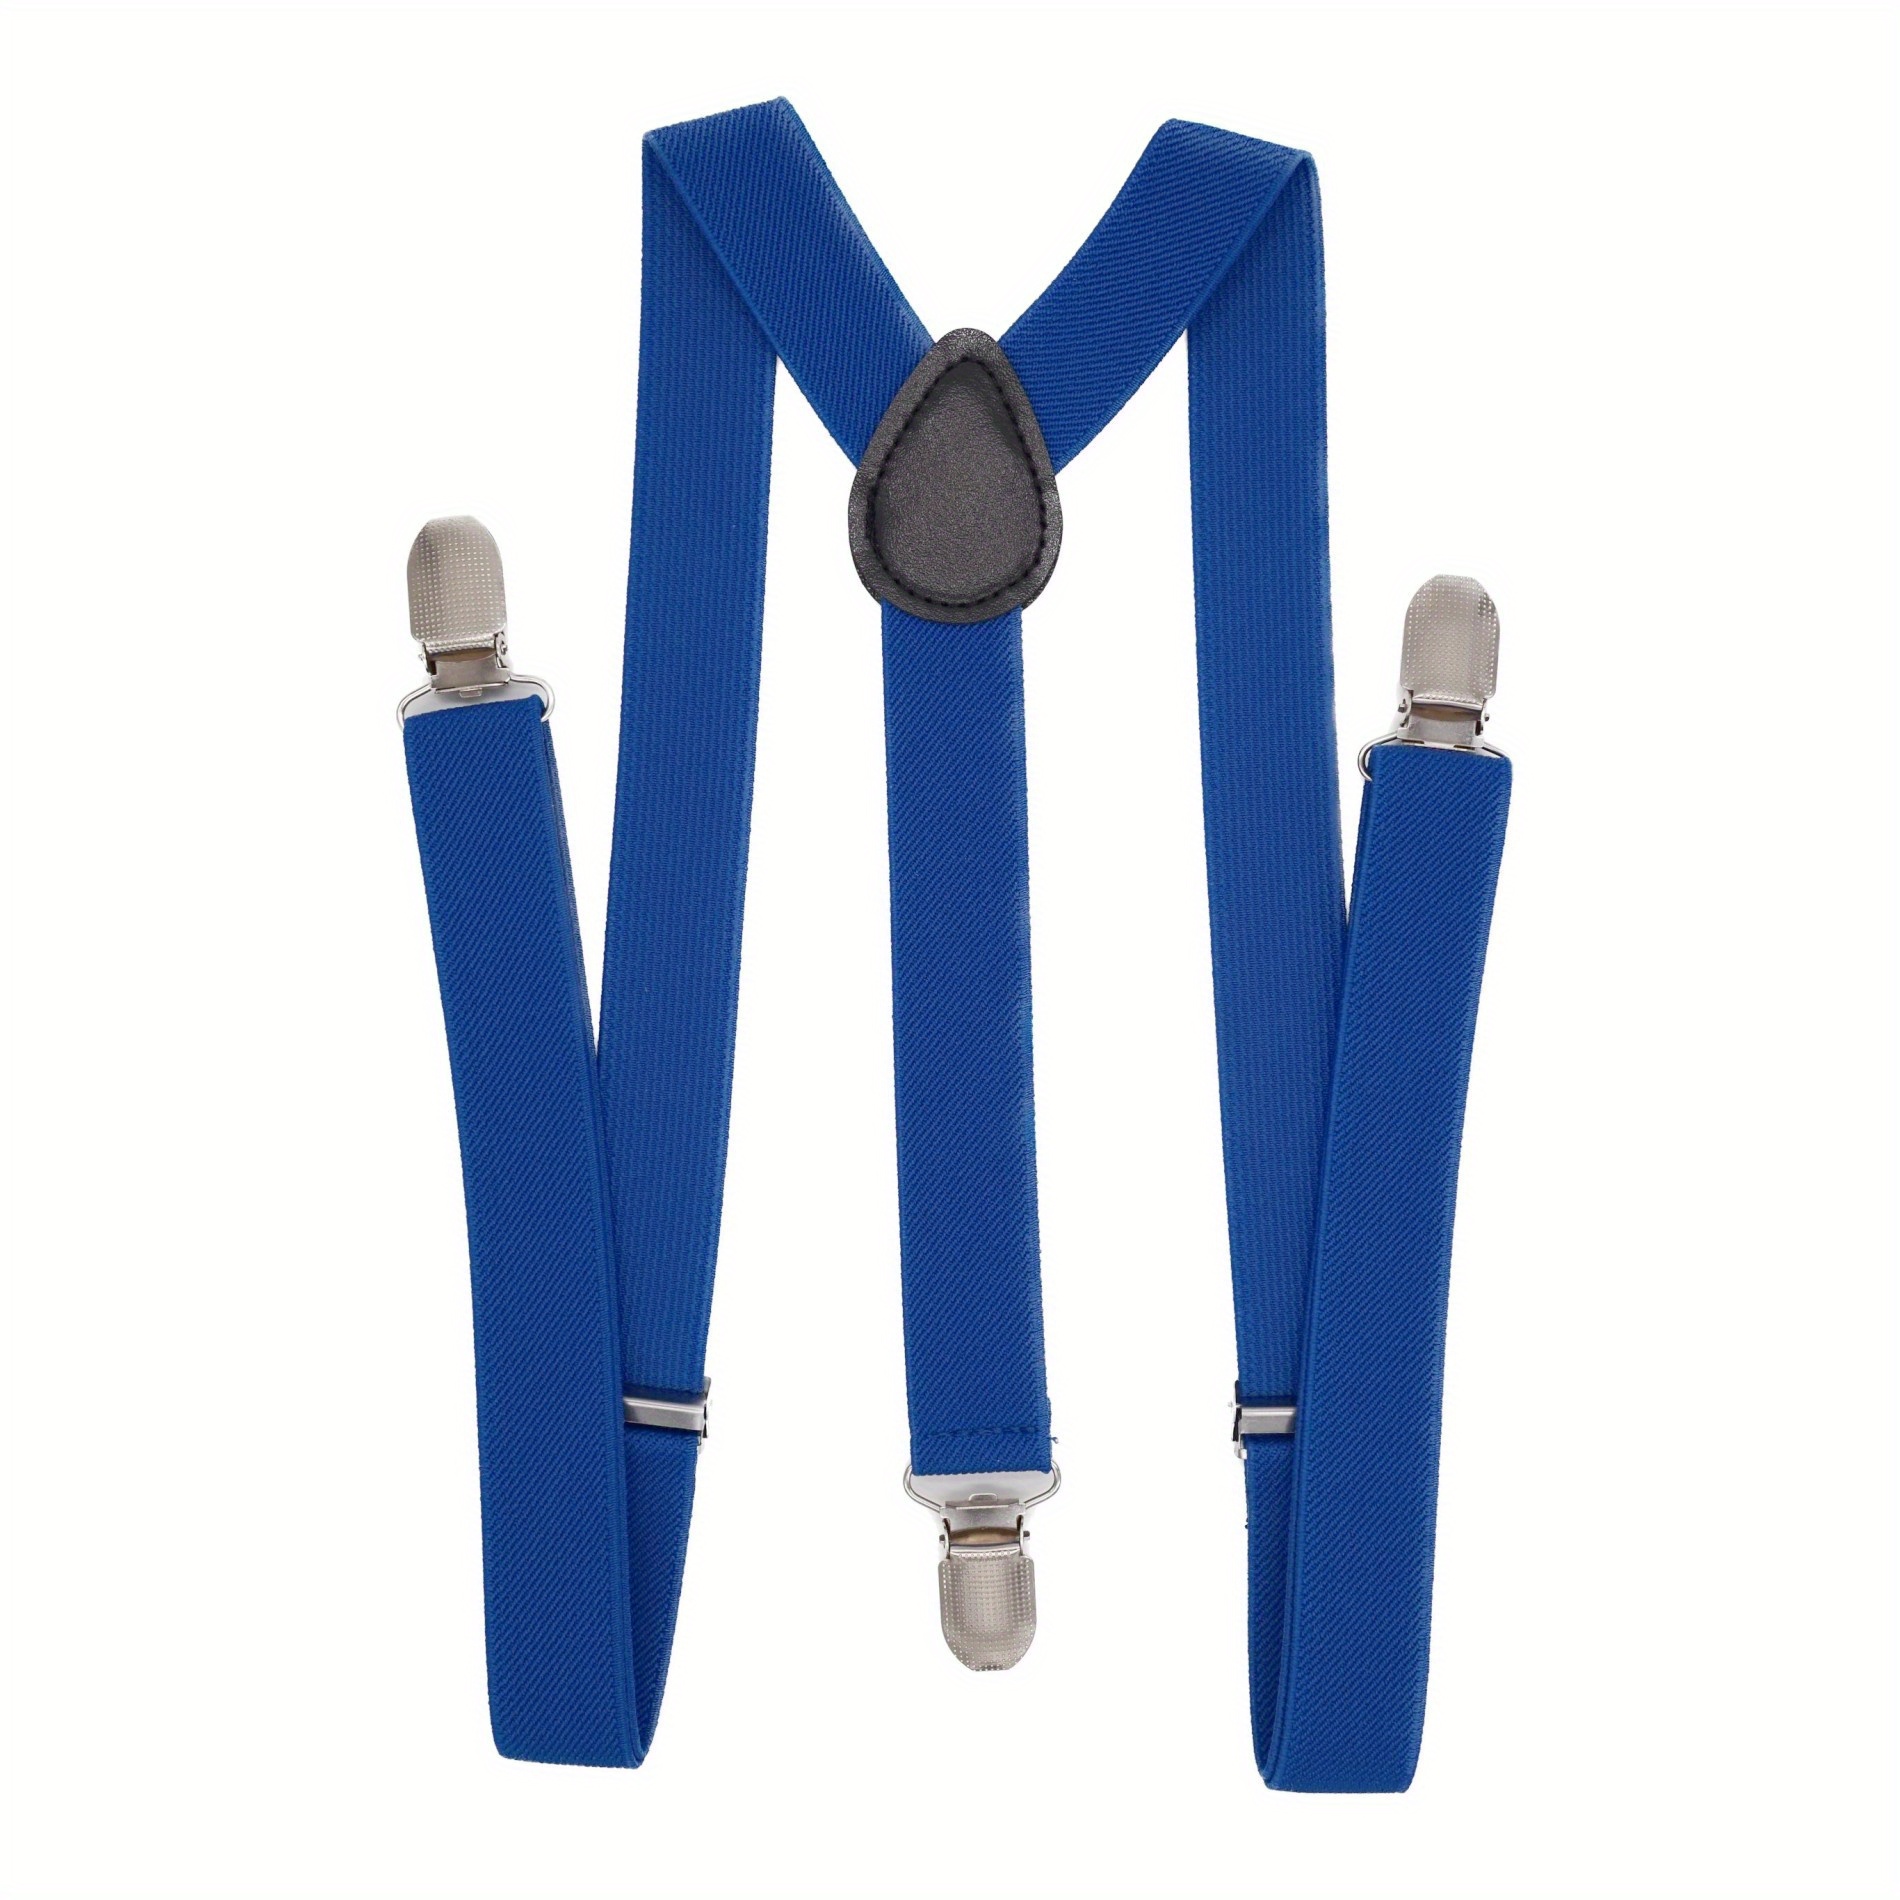 Buyisi Women Men Elastic Suspenders Black Adjustable Braces Y-Shape Clip-On Royal Blue, Men's, Size: One Size